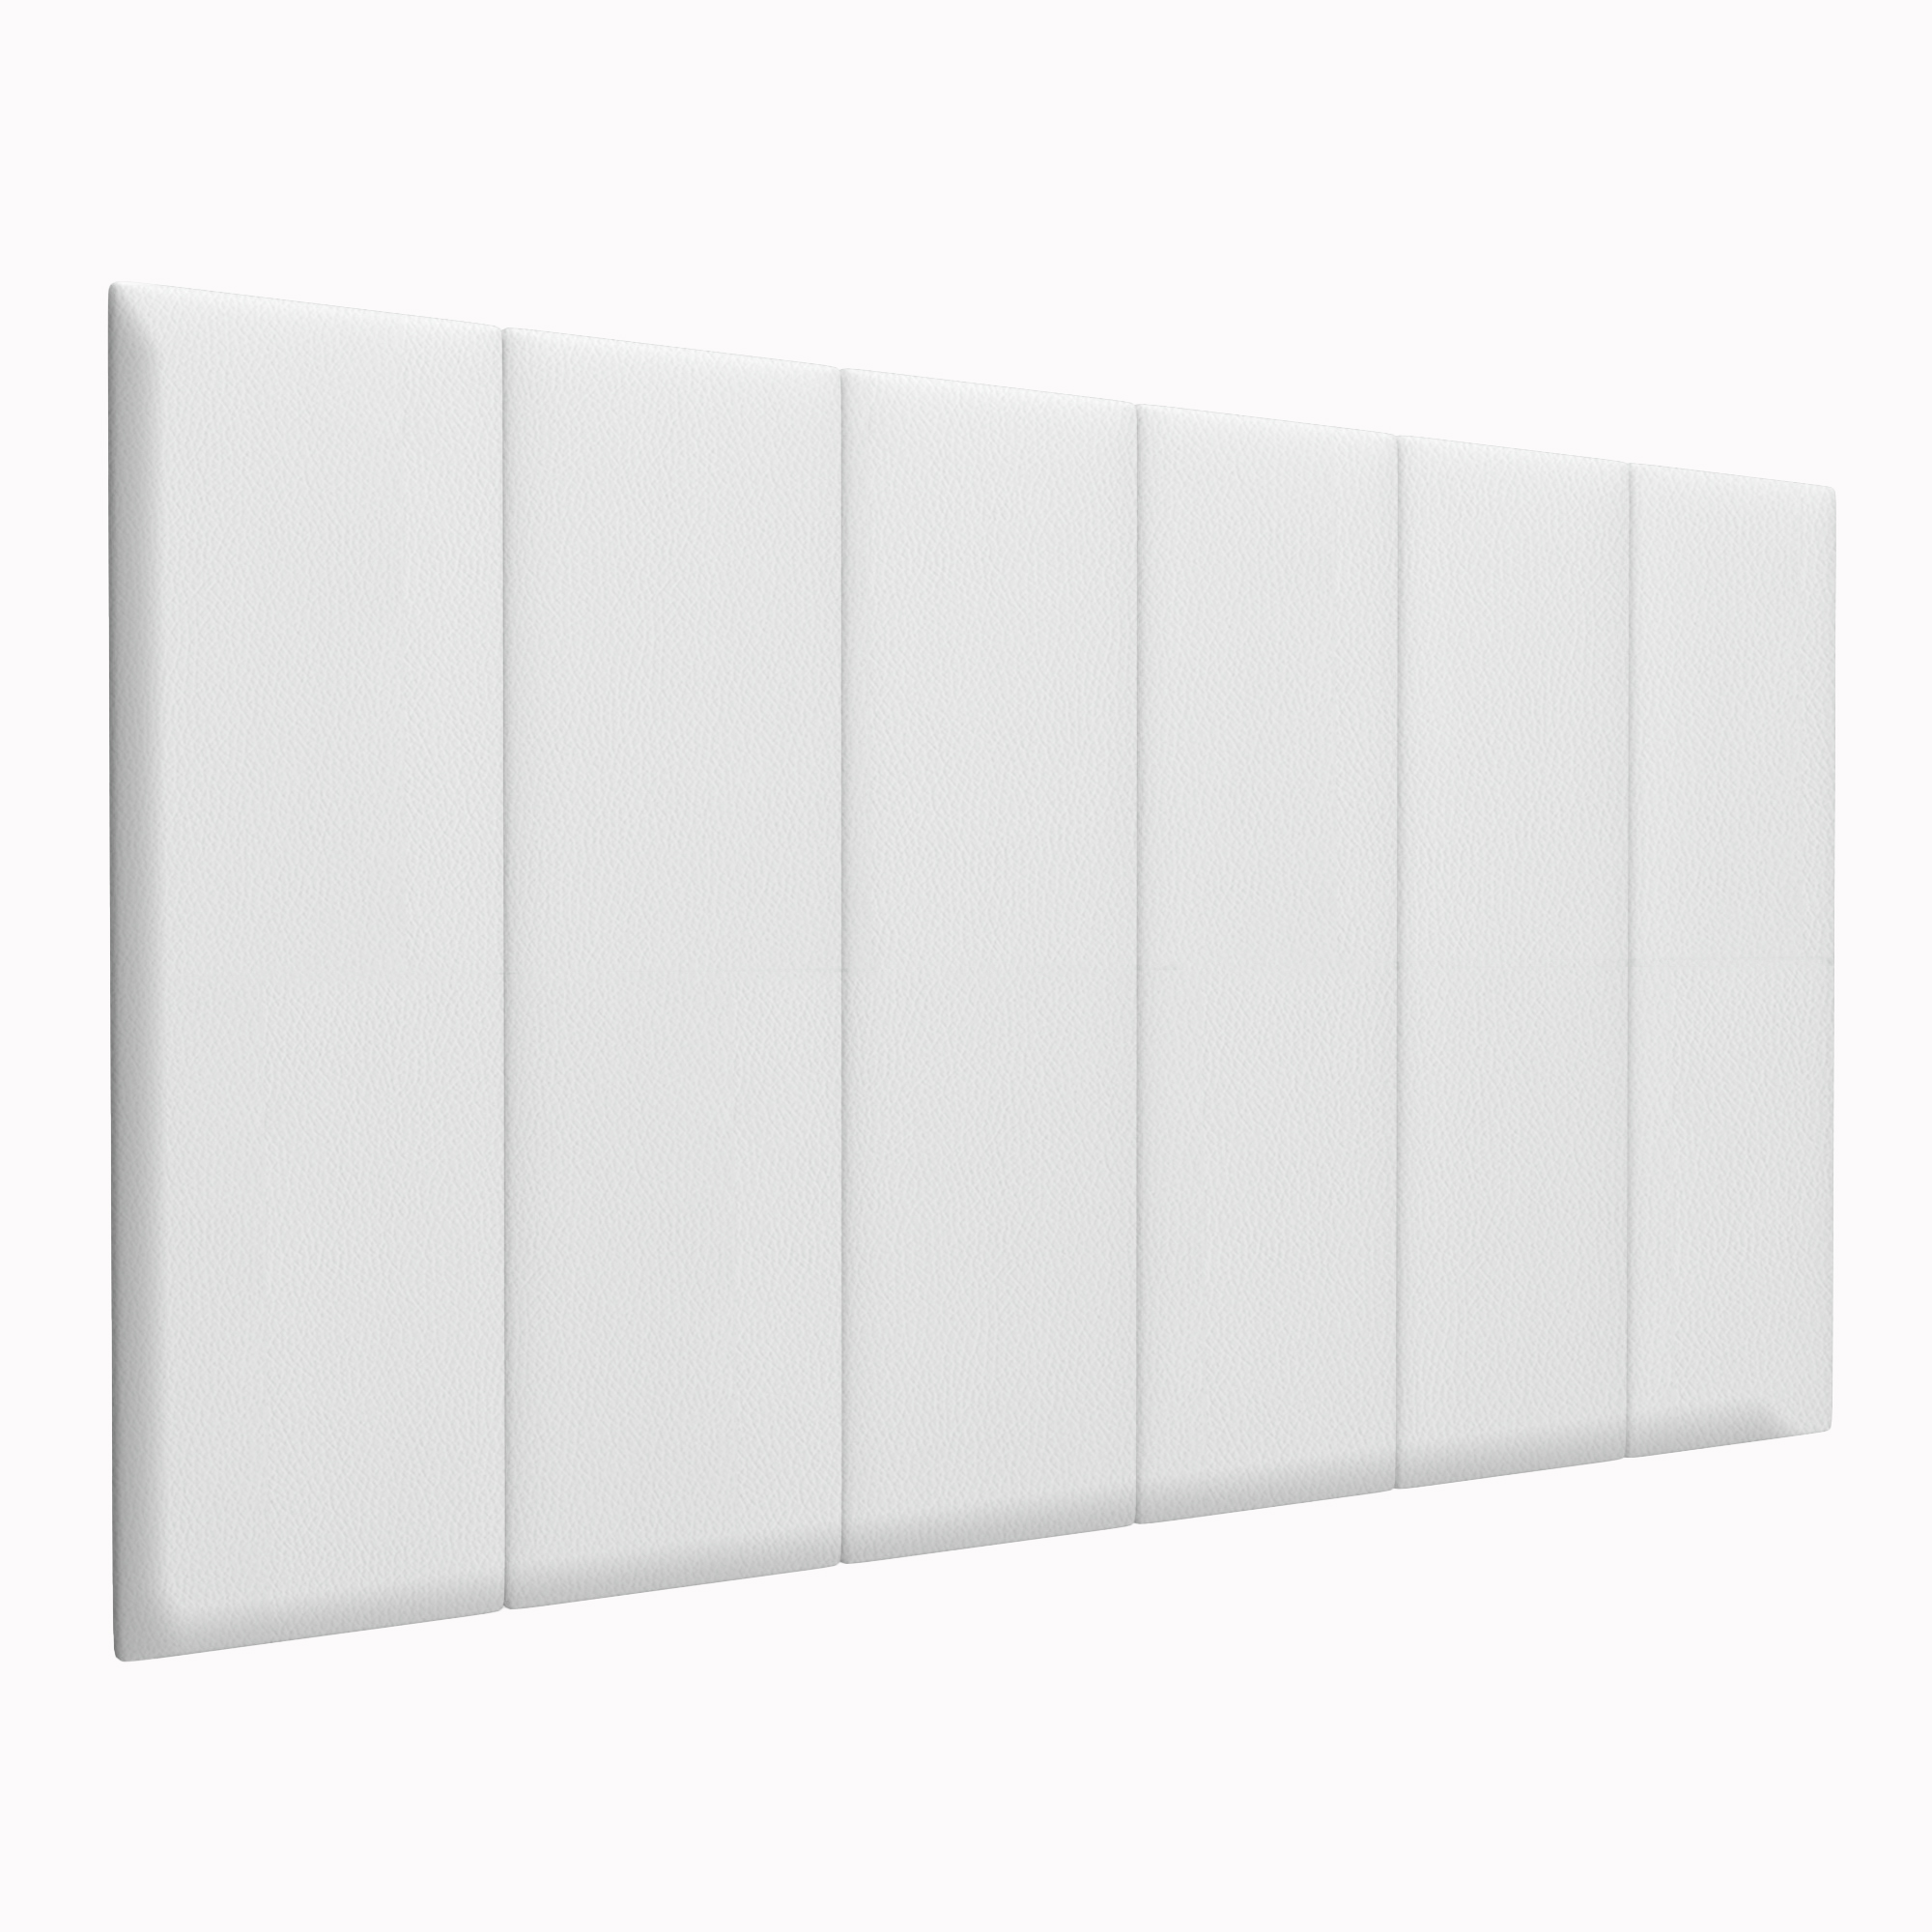 Шумо звукоизоляционные мягкие панели Eco Leather White 30х100 см 4 шт.